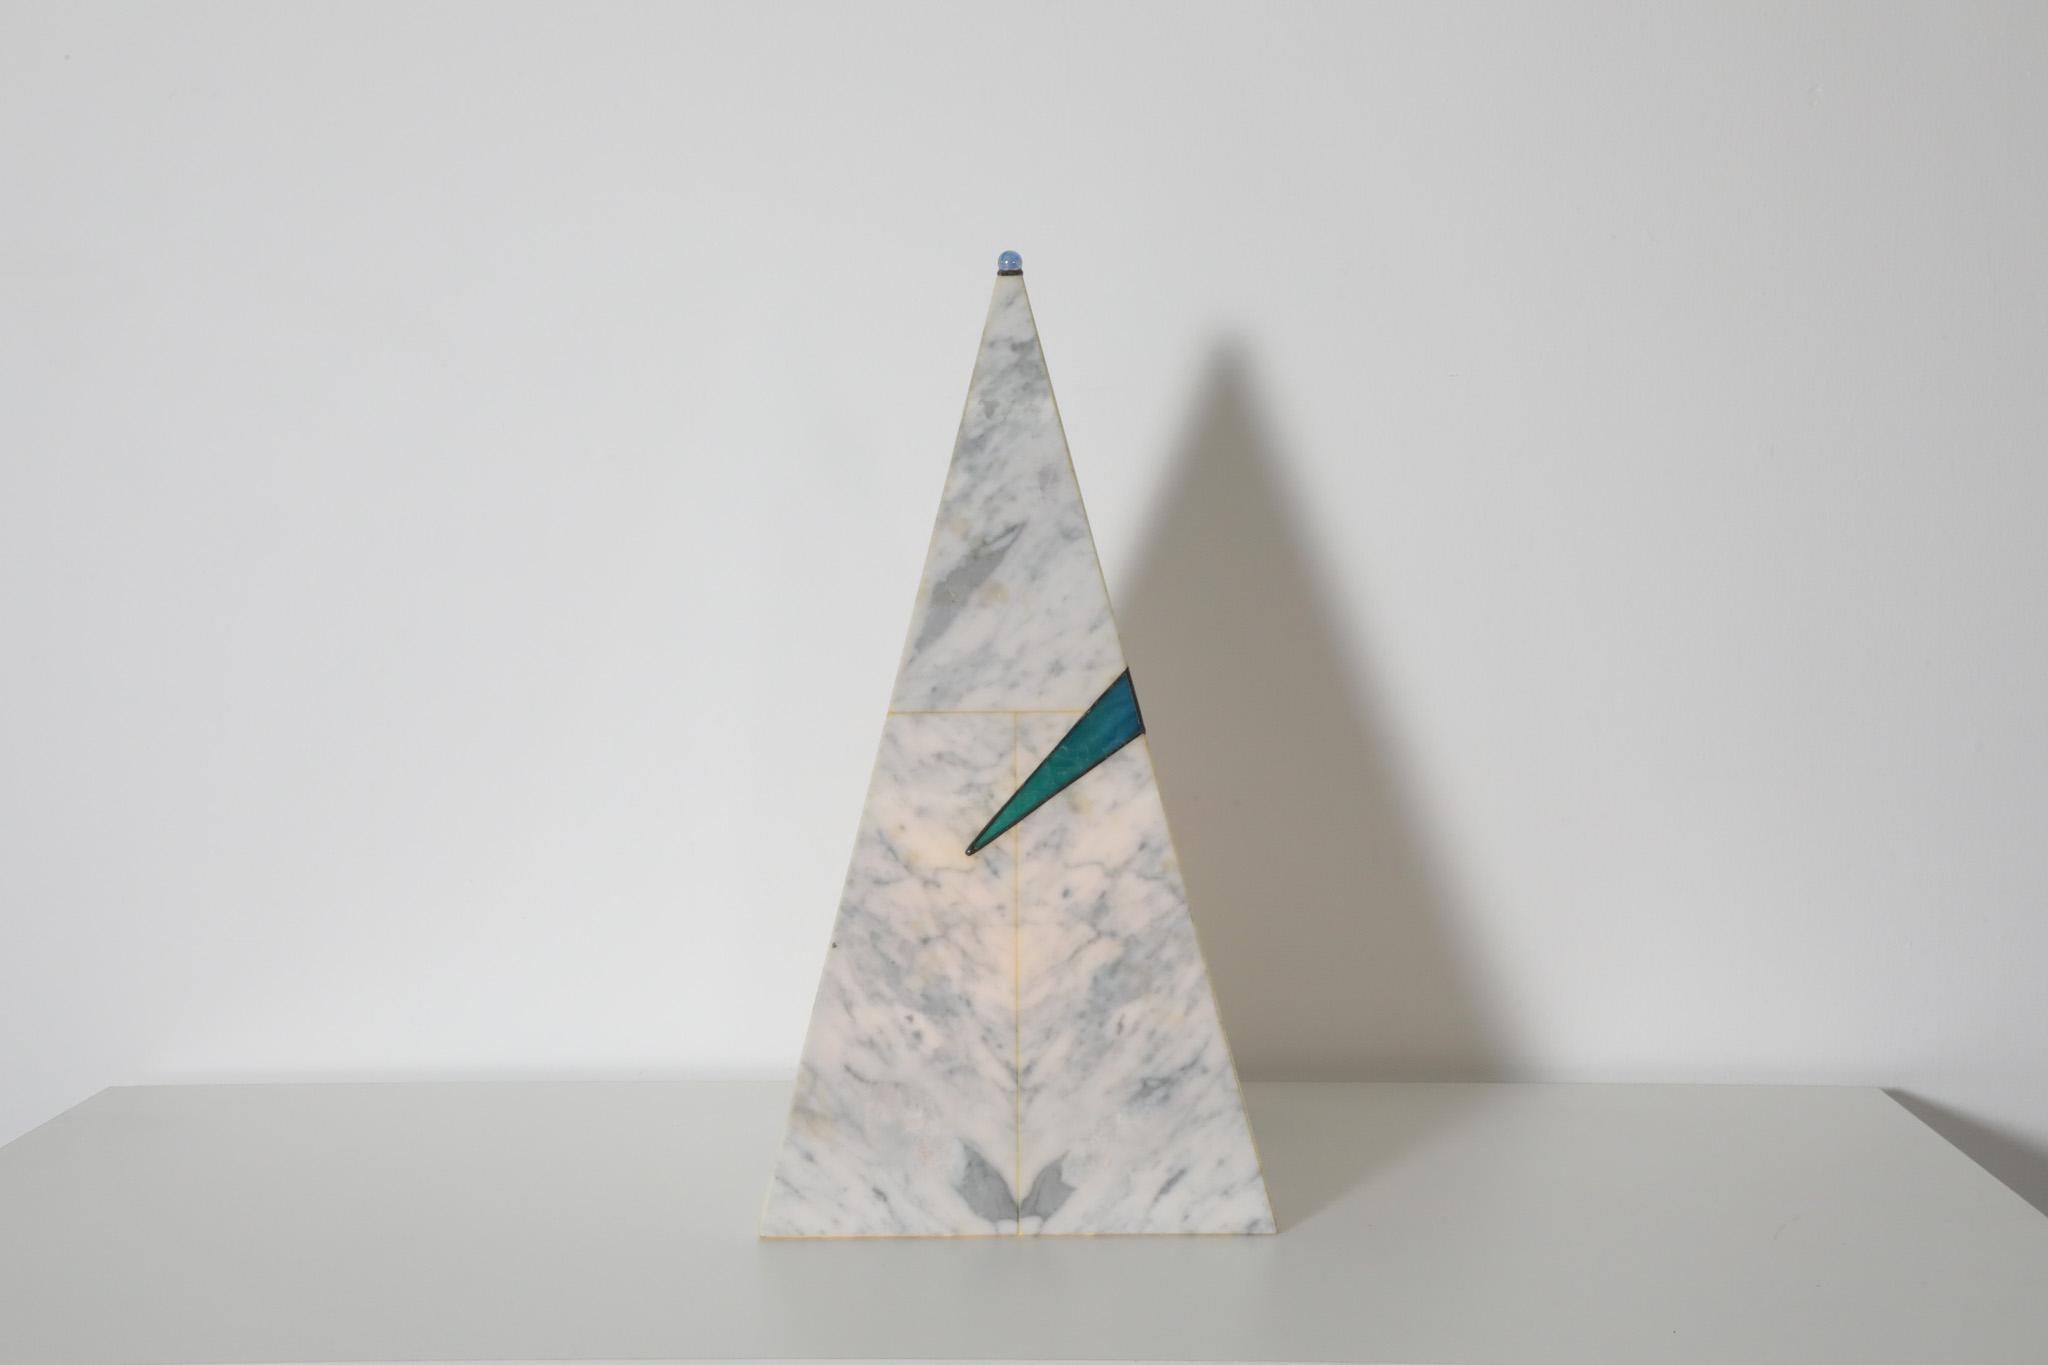 Pyramidenförmige Tischlampe im Memphis-Stil aus weißem und grauem Kunstmarmor mit einer kleinen Glasmurmel an der Spitze der Pyramide und einem blauen Kunstglasdetail in der Mitte. Die Lampe gibt einen schwachen Lichtschein ab. Im Originalzustand